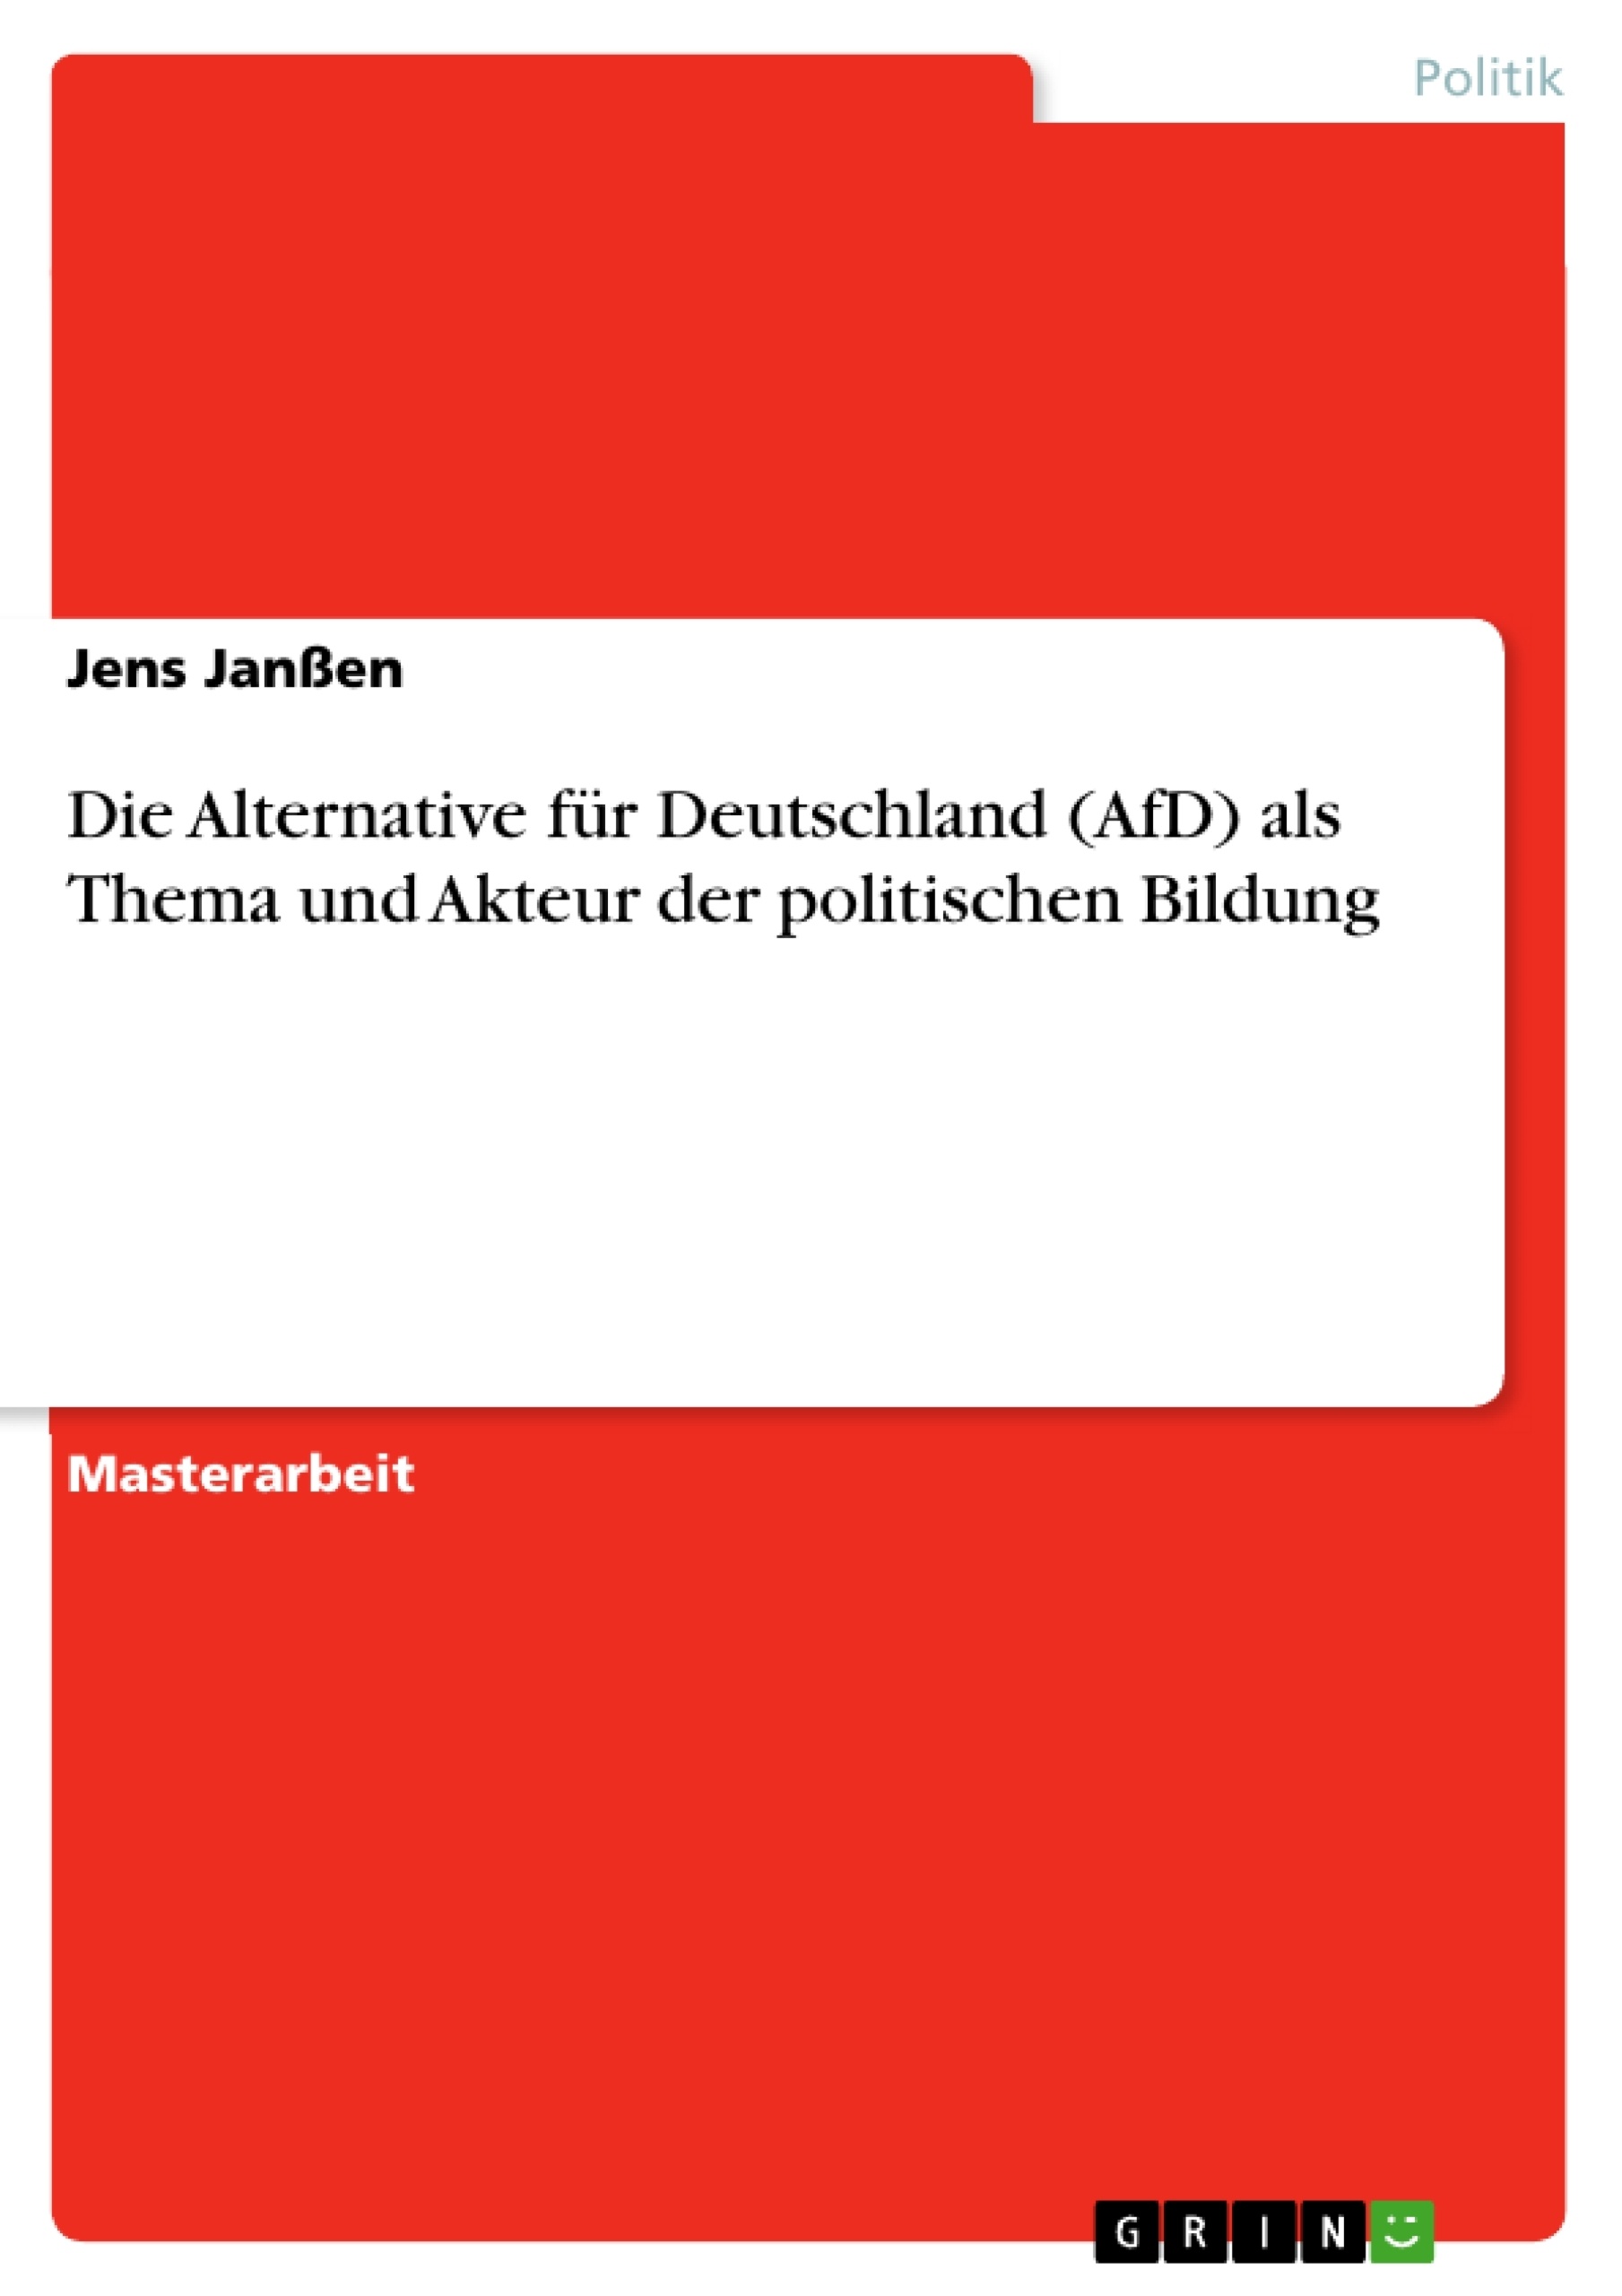 Title: Die Alternative für Deutschland (AfD) als Thema und Akteur der politischen Bildung